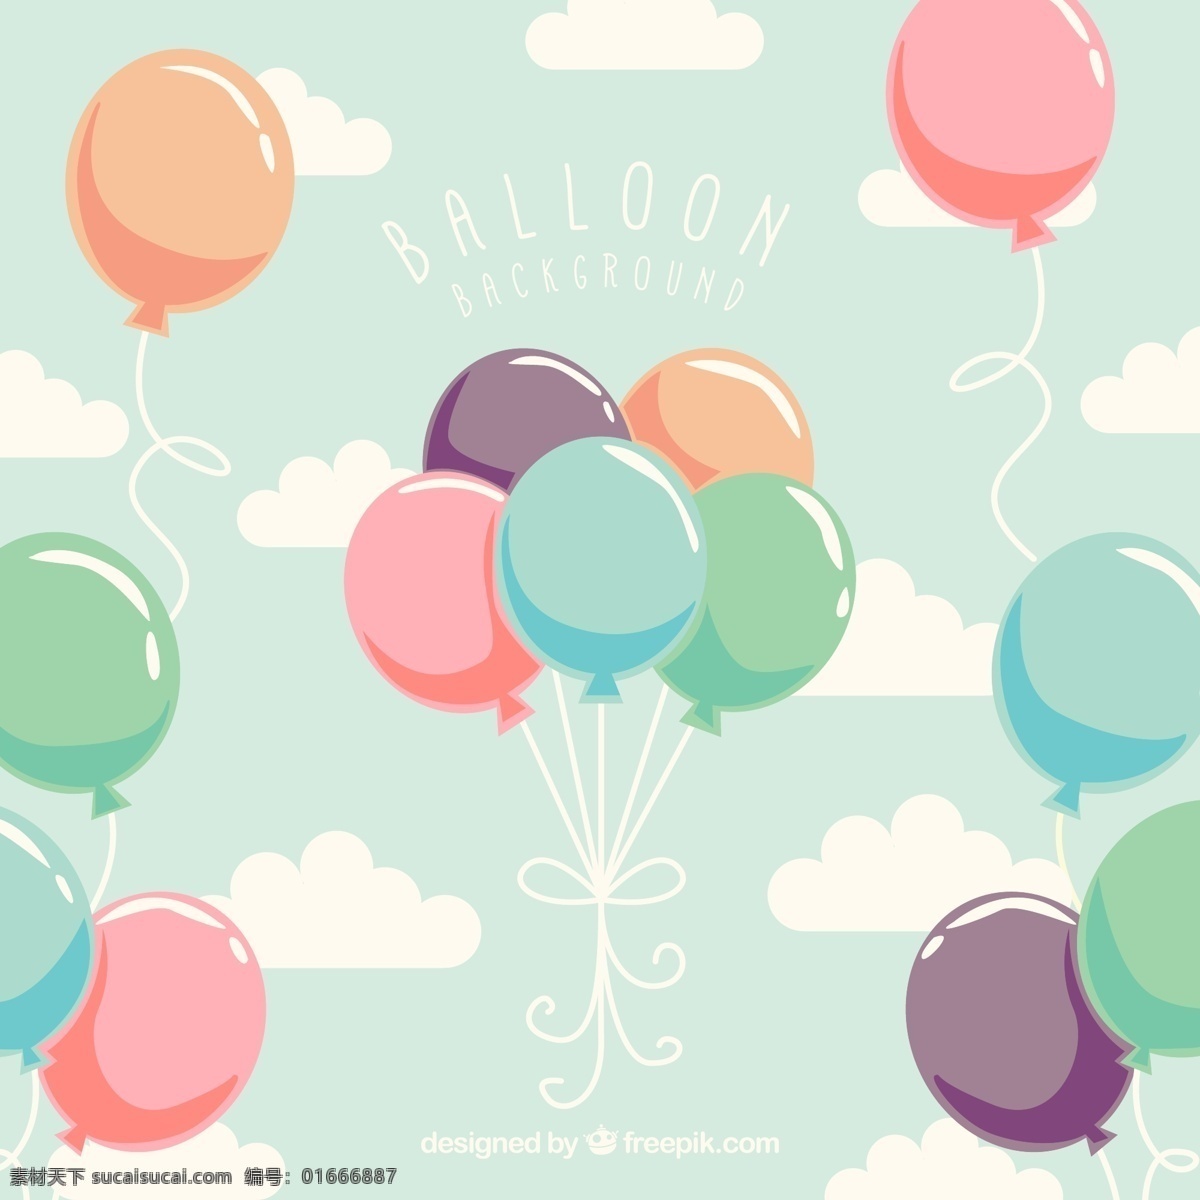 创意 天空 中 彩色 气球 束 气球束 云朵 背景边框 动漫动画 风景漫画